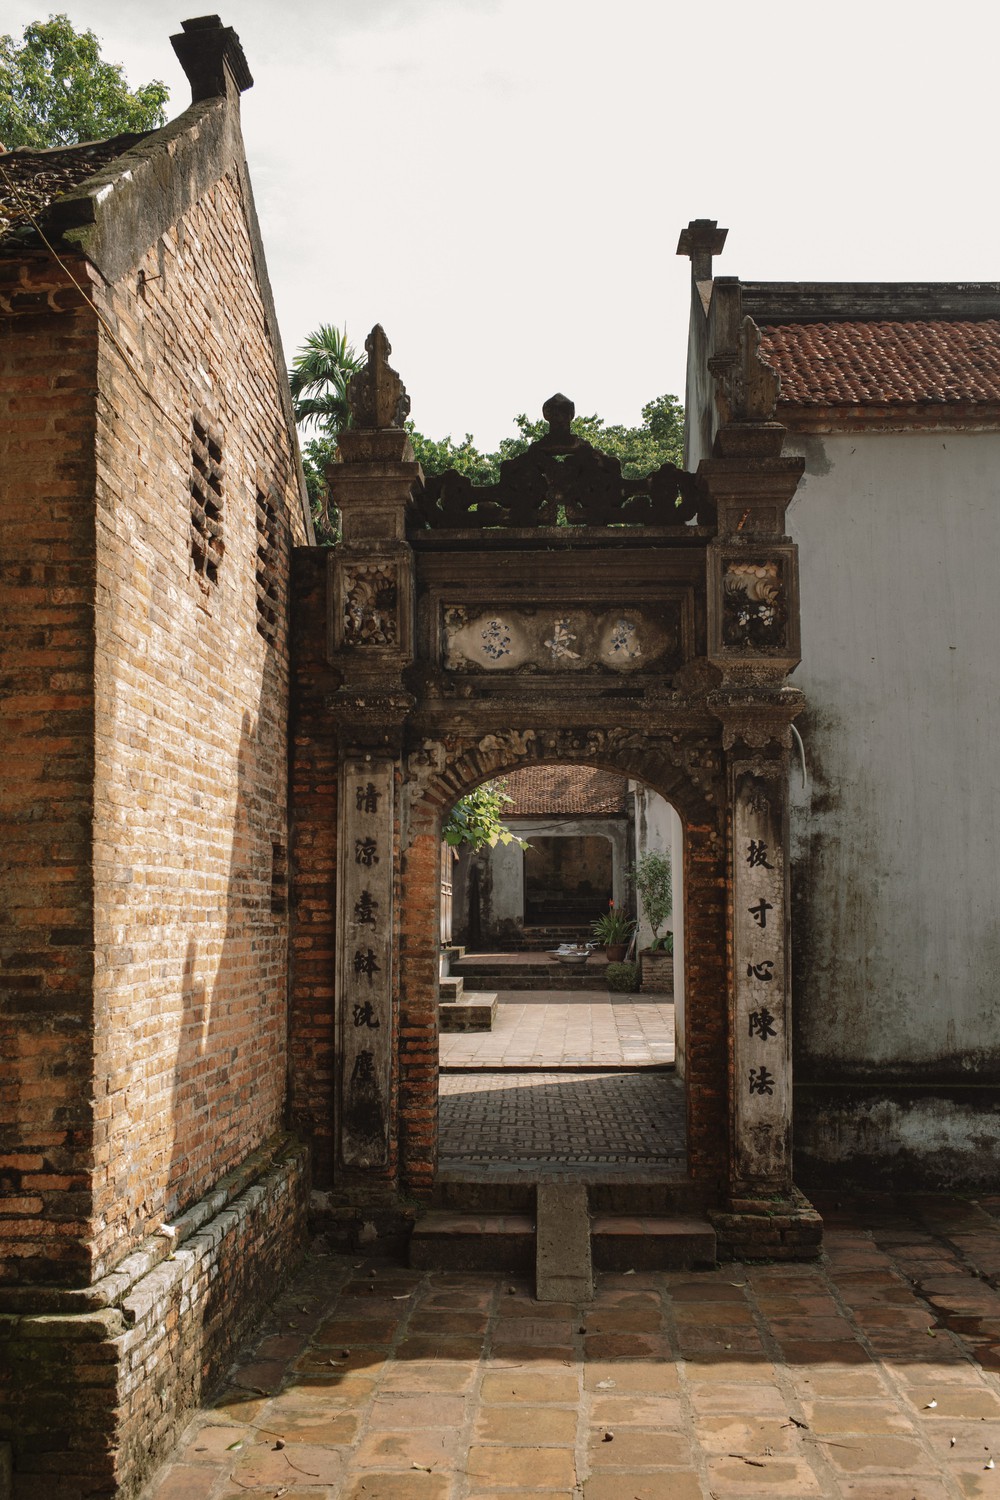 Chùa Bổ Đà - Danh lam cổ tự nổi tiếng vùng Kinh Bắc, cánh cổng đến với những giá trị xưa cũ quý giá, ai cũng nên đến thăm một lần - Ảnh 8.